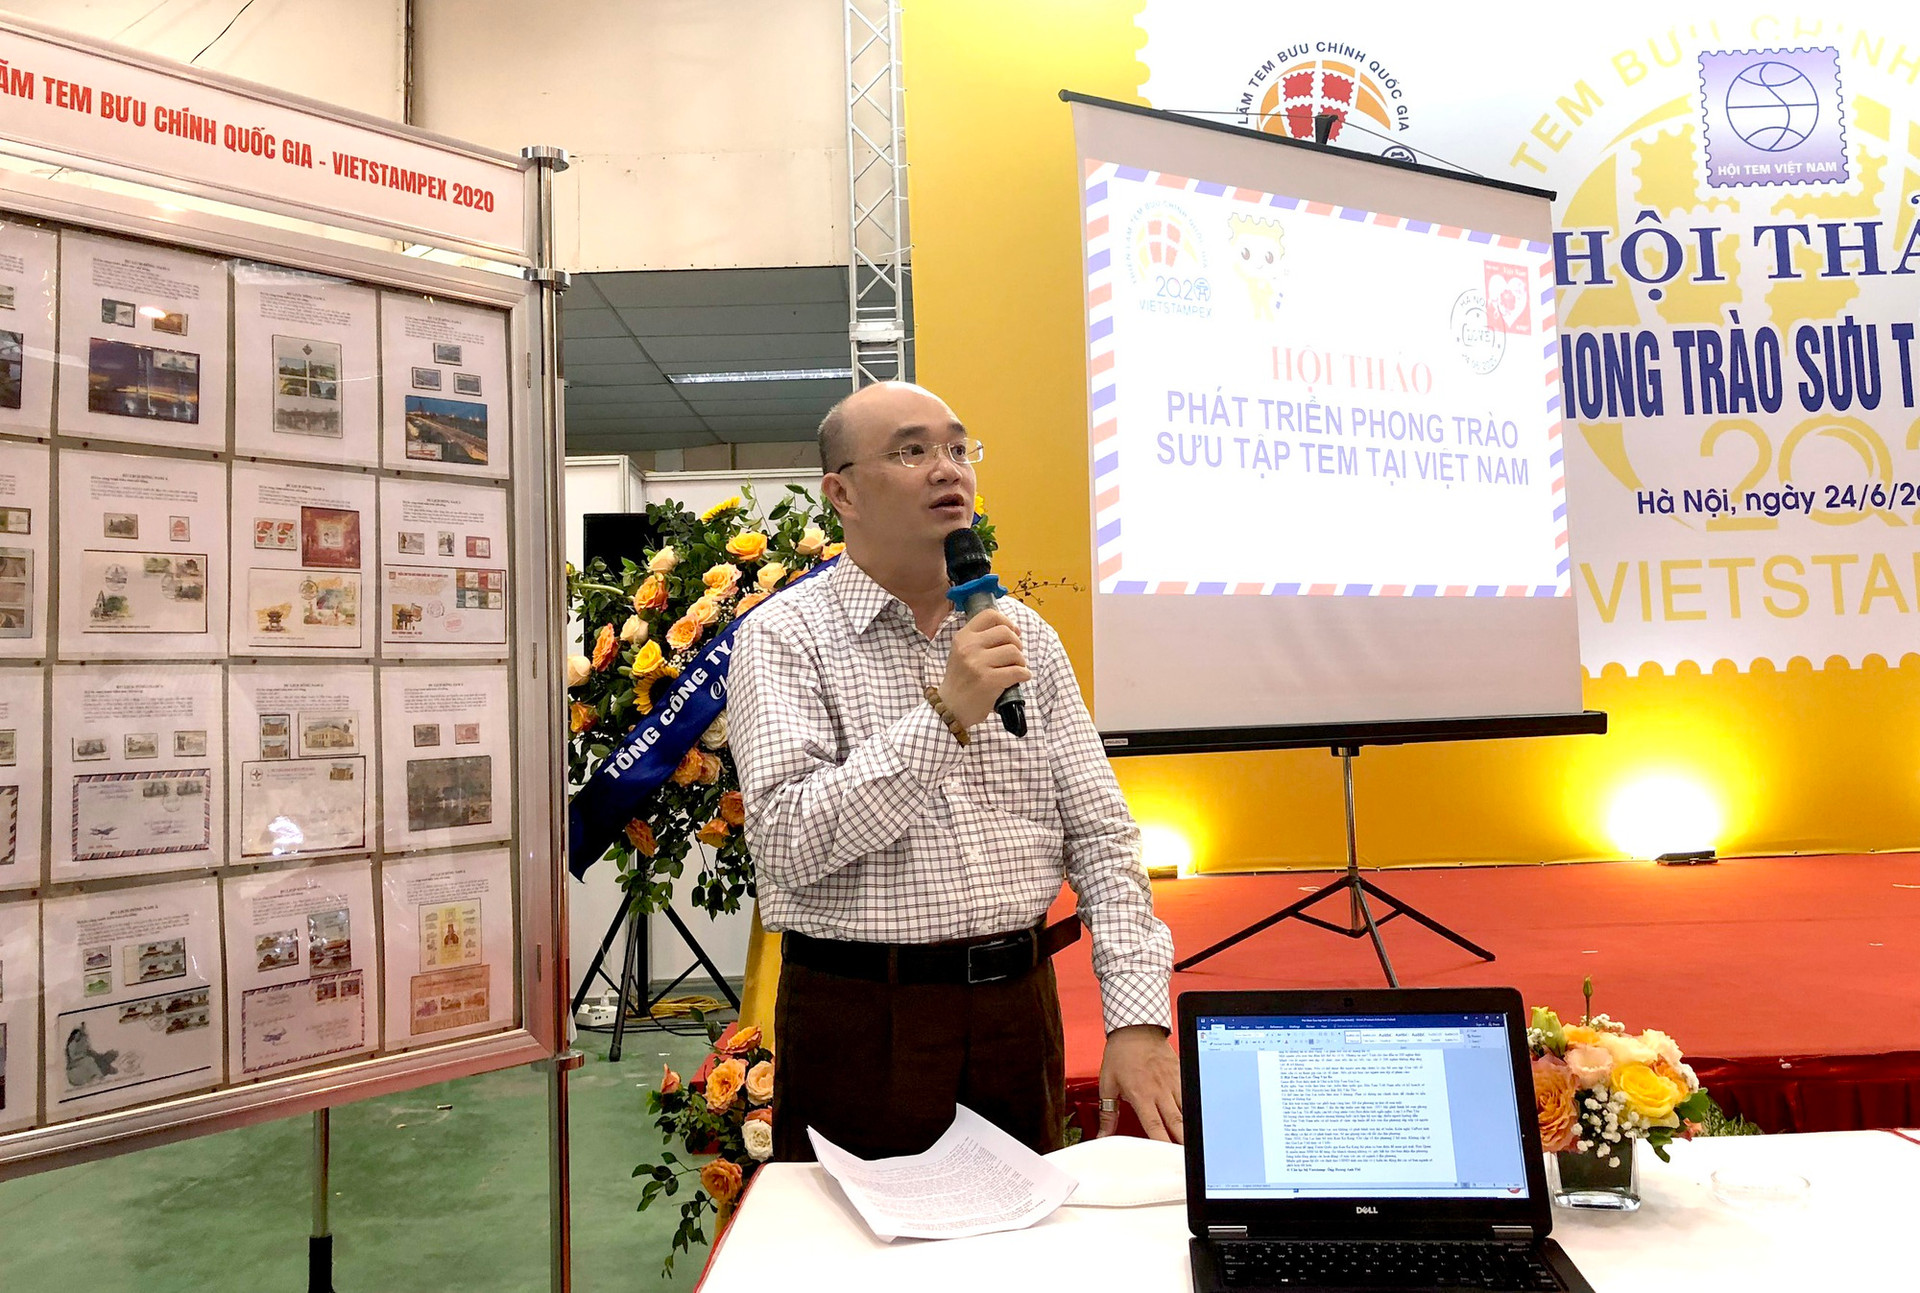 Đề xuất nhiều giải pháp phát triển phong trào sưu tập tem Việt Nam - Ảnh 2.